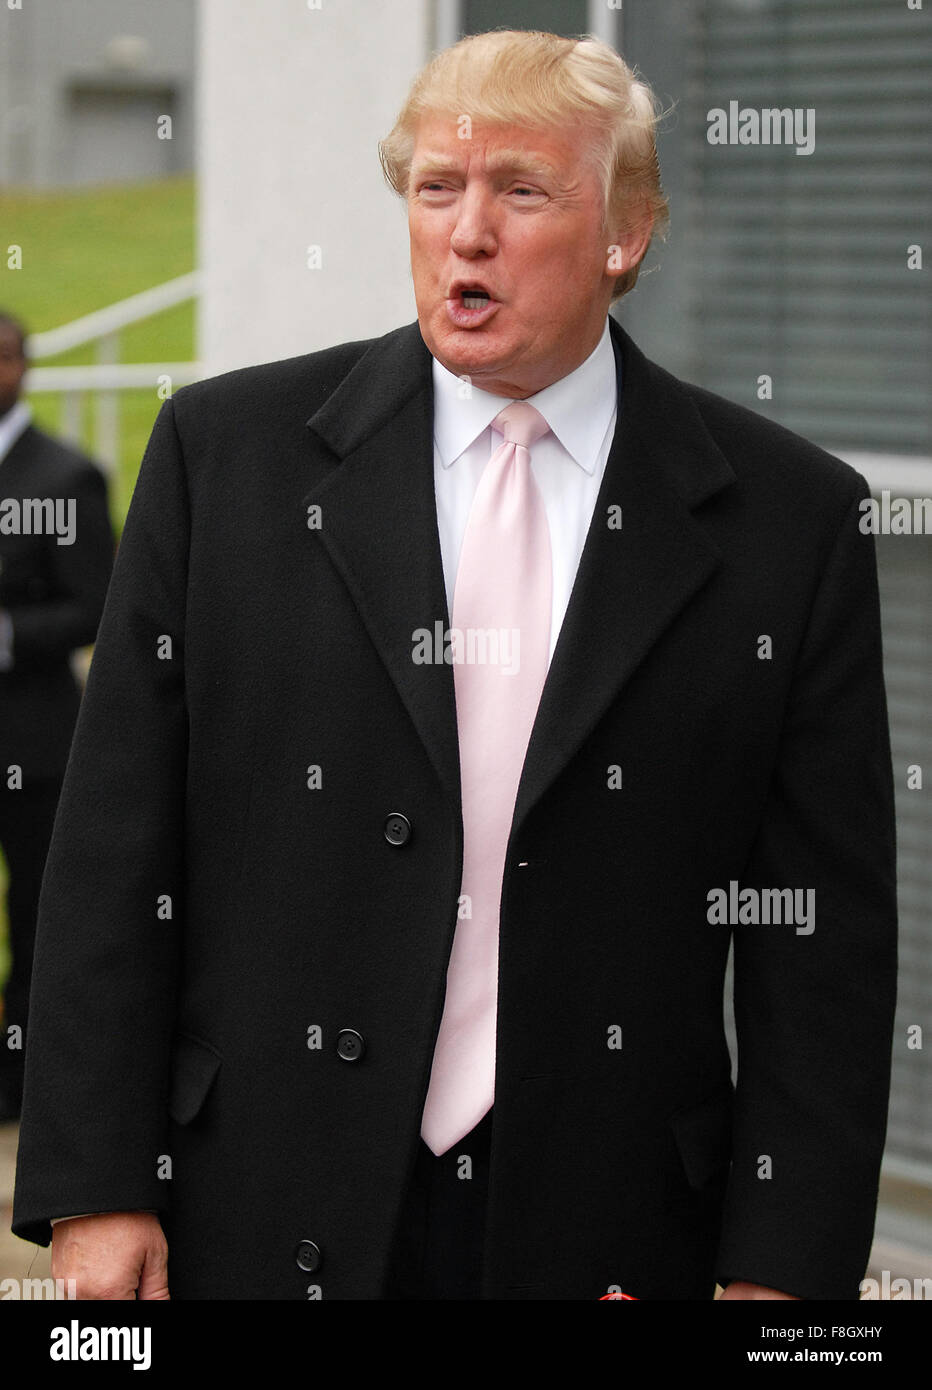 Donald Trump recevoir diplôme honorifique à Aberdeen, en Écosse. Banque D'Images